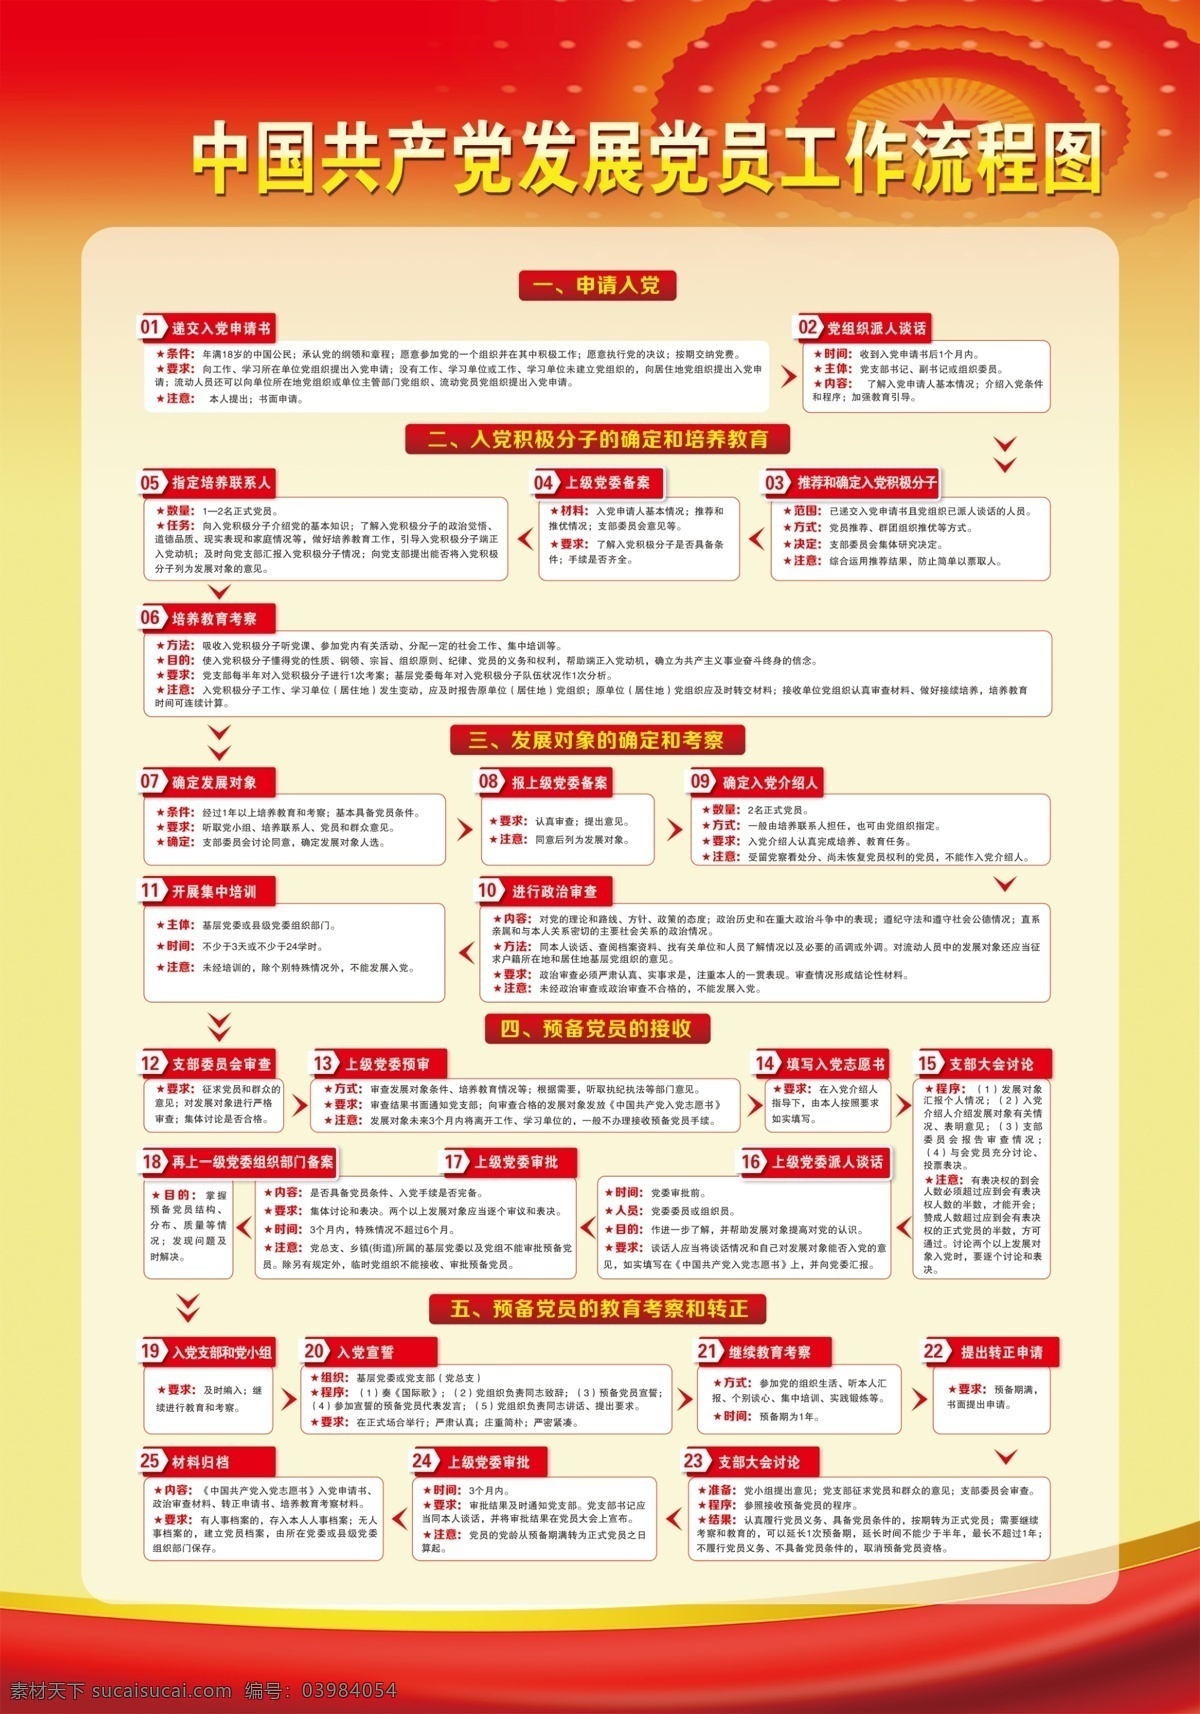 中国共产党 发展党 员工 作 流程图 发展党员 工作流程图 背景 制度背景 分层